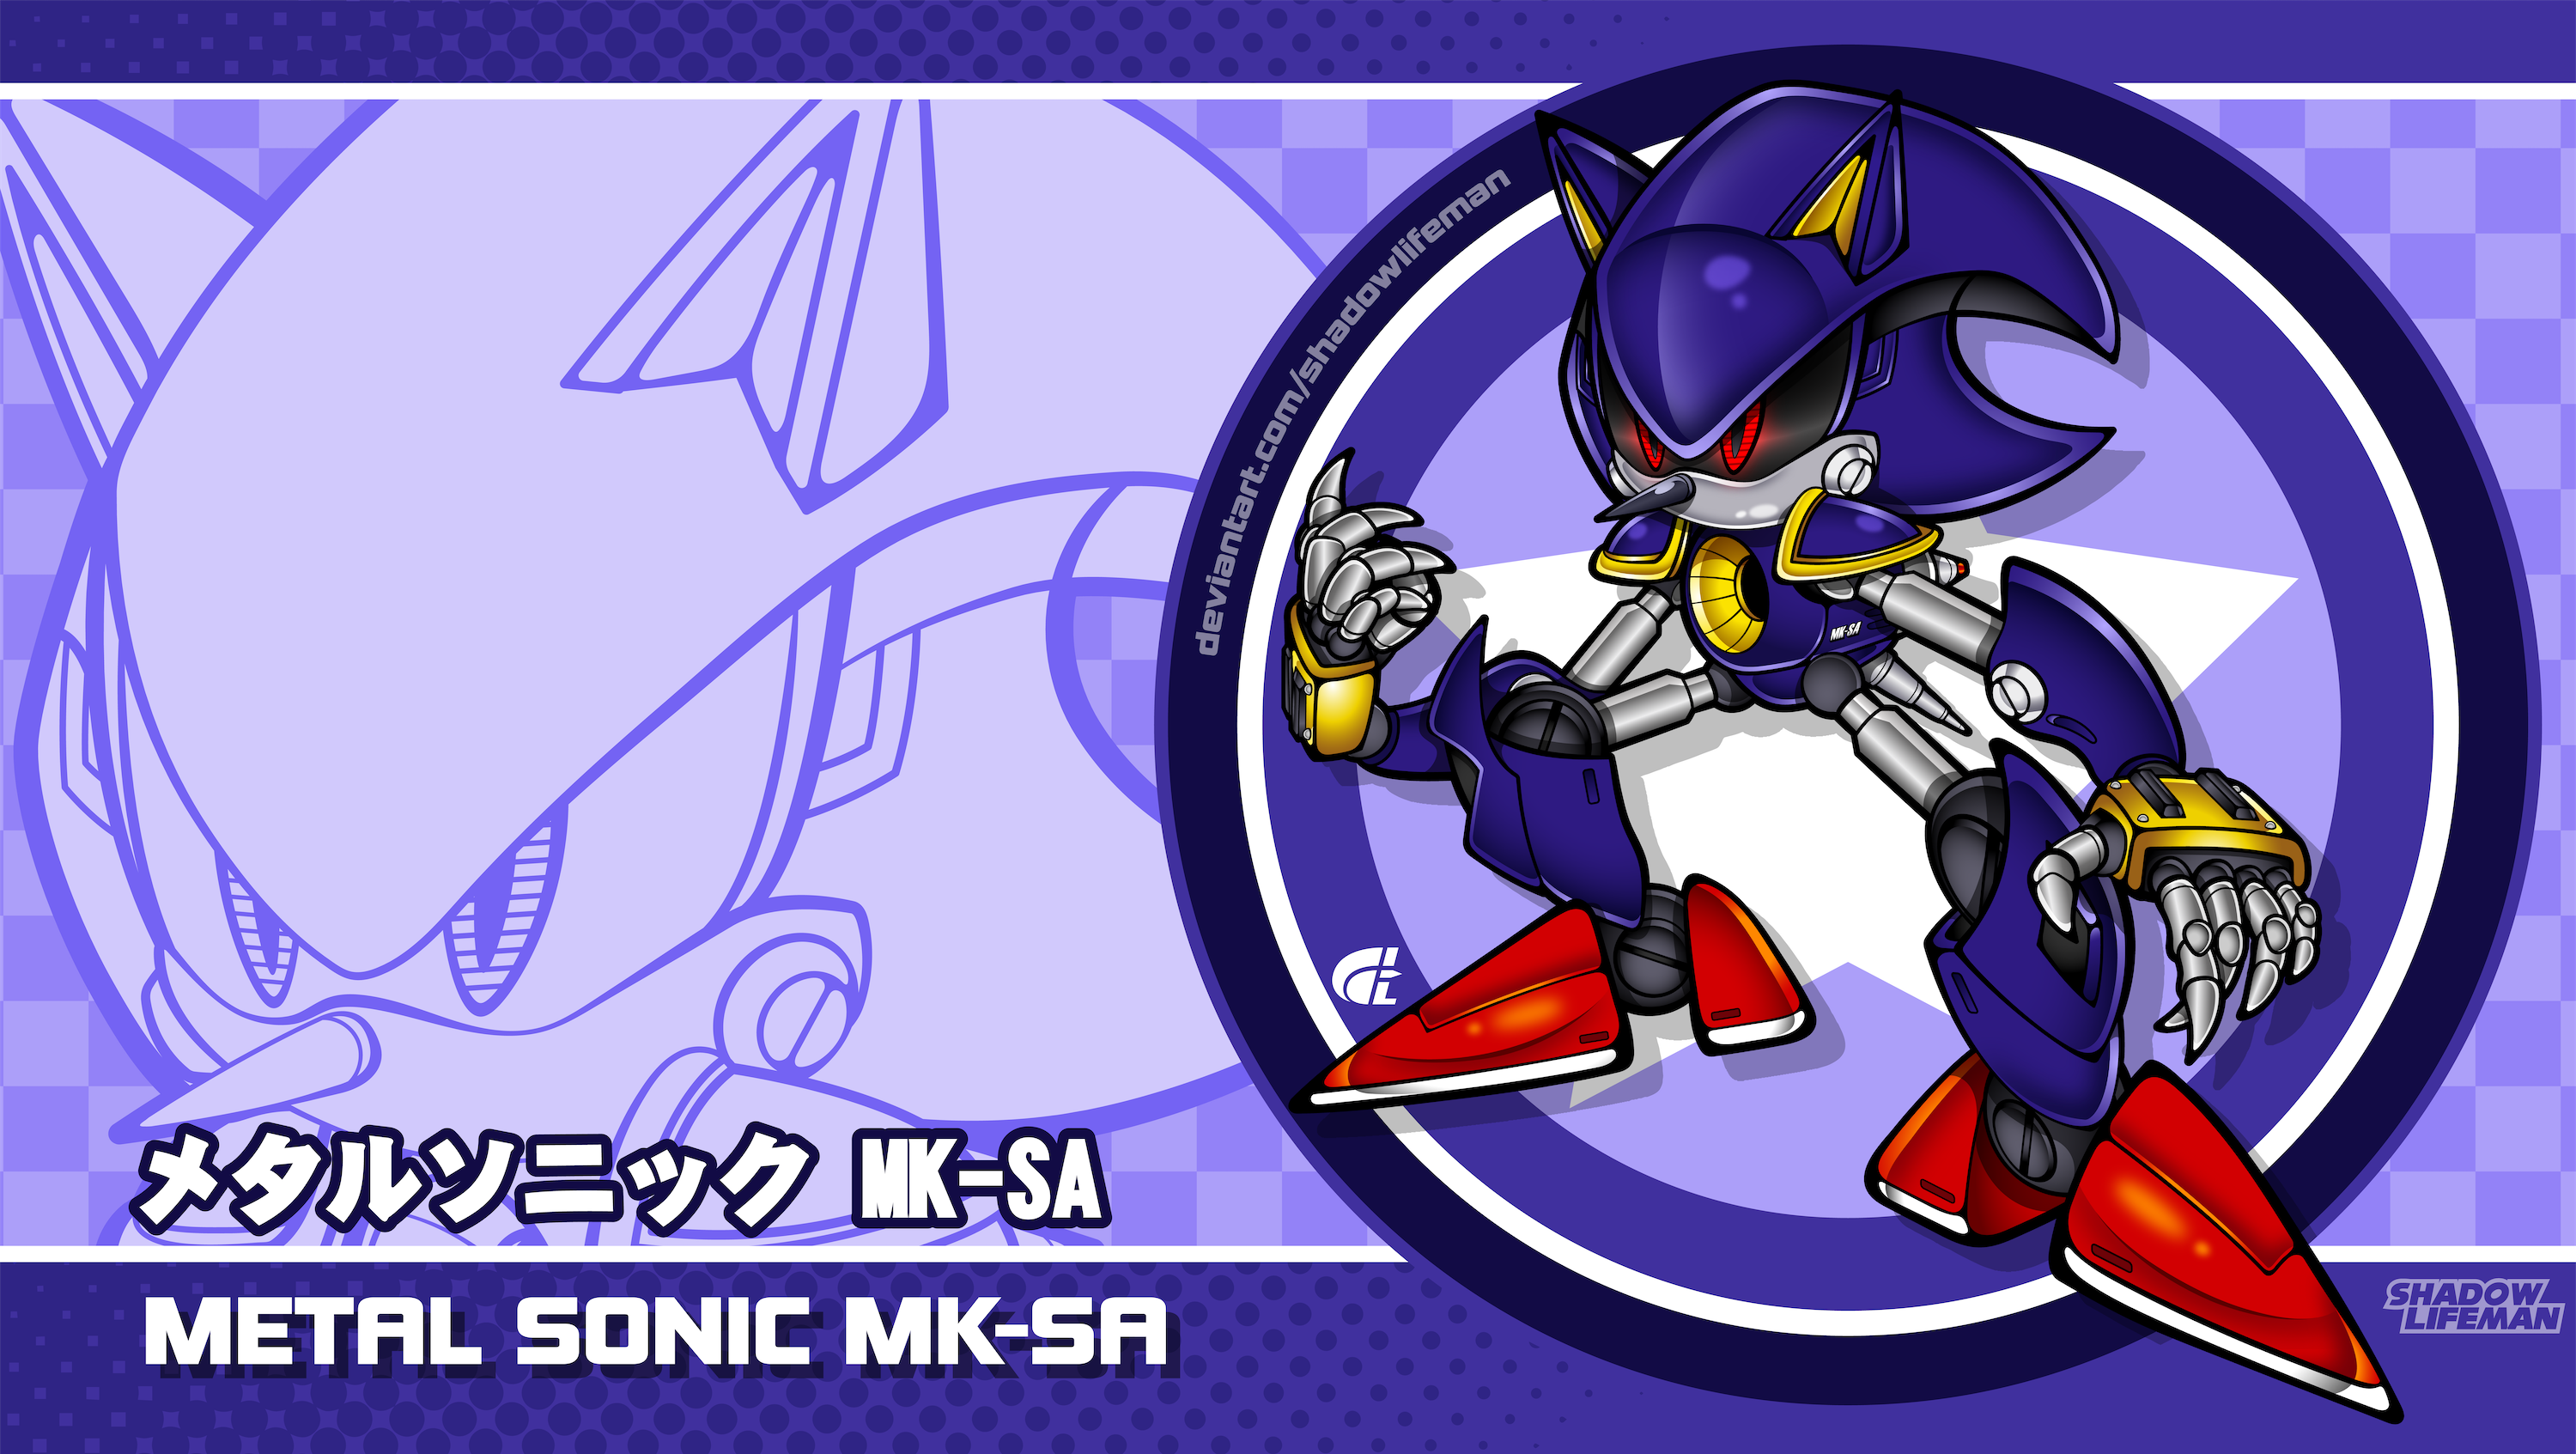 Mecha Sonic MKIII by Ishida1694 on DeviantArt